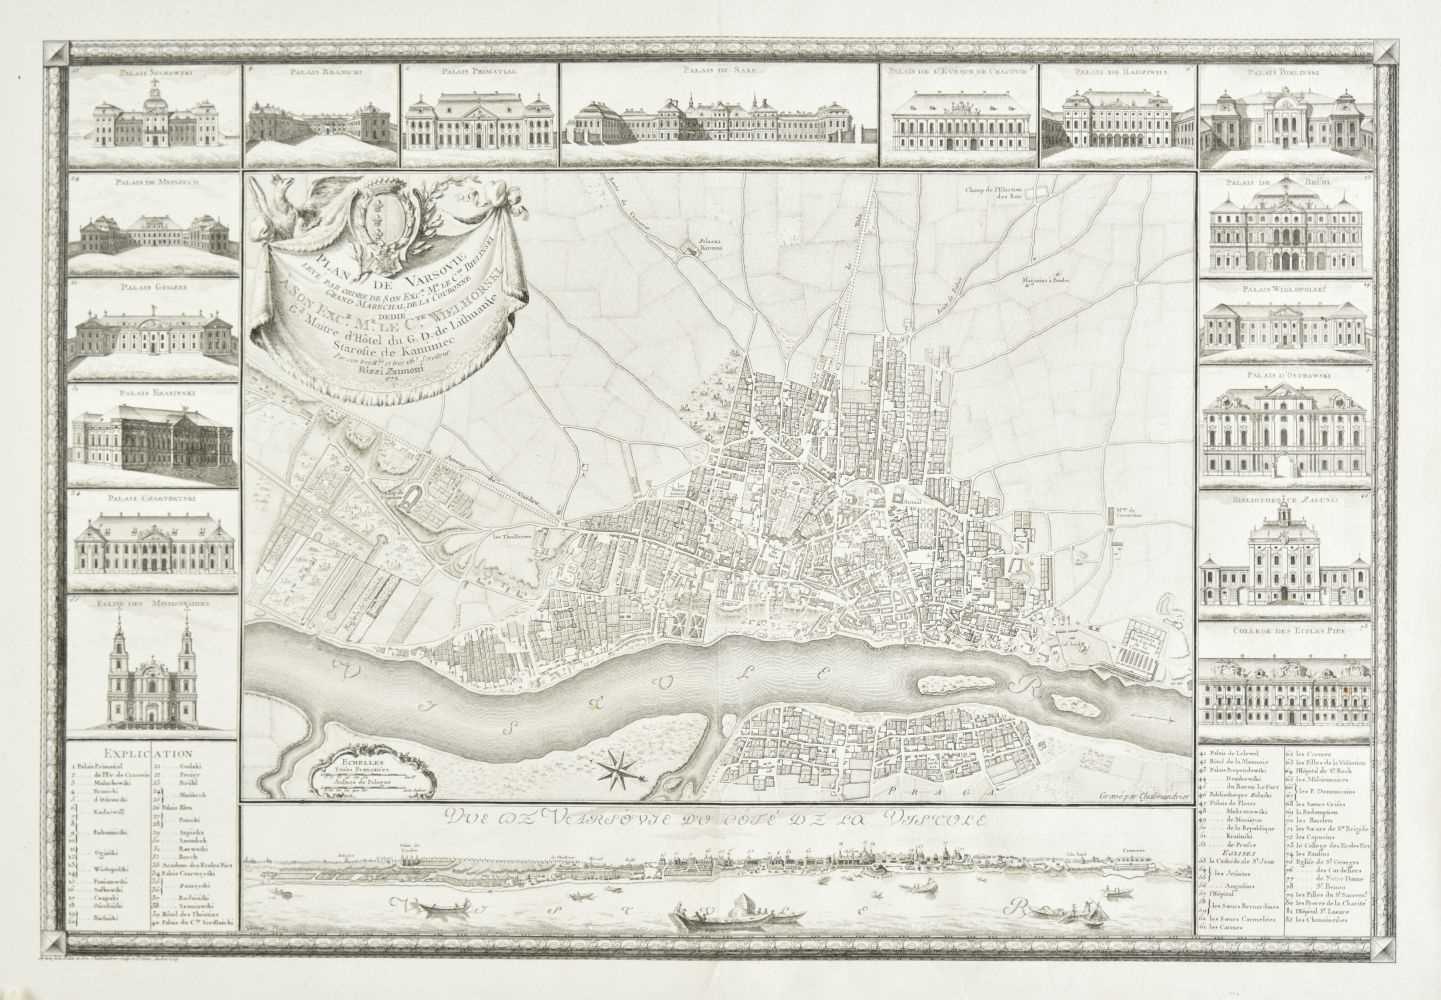 Lot 125 - Warsaw. Rizzi Zannoni (Giovanni), Plan de Varscovie..., 1772